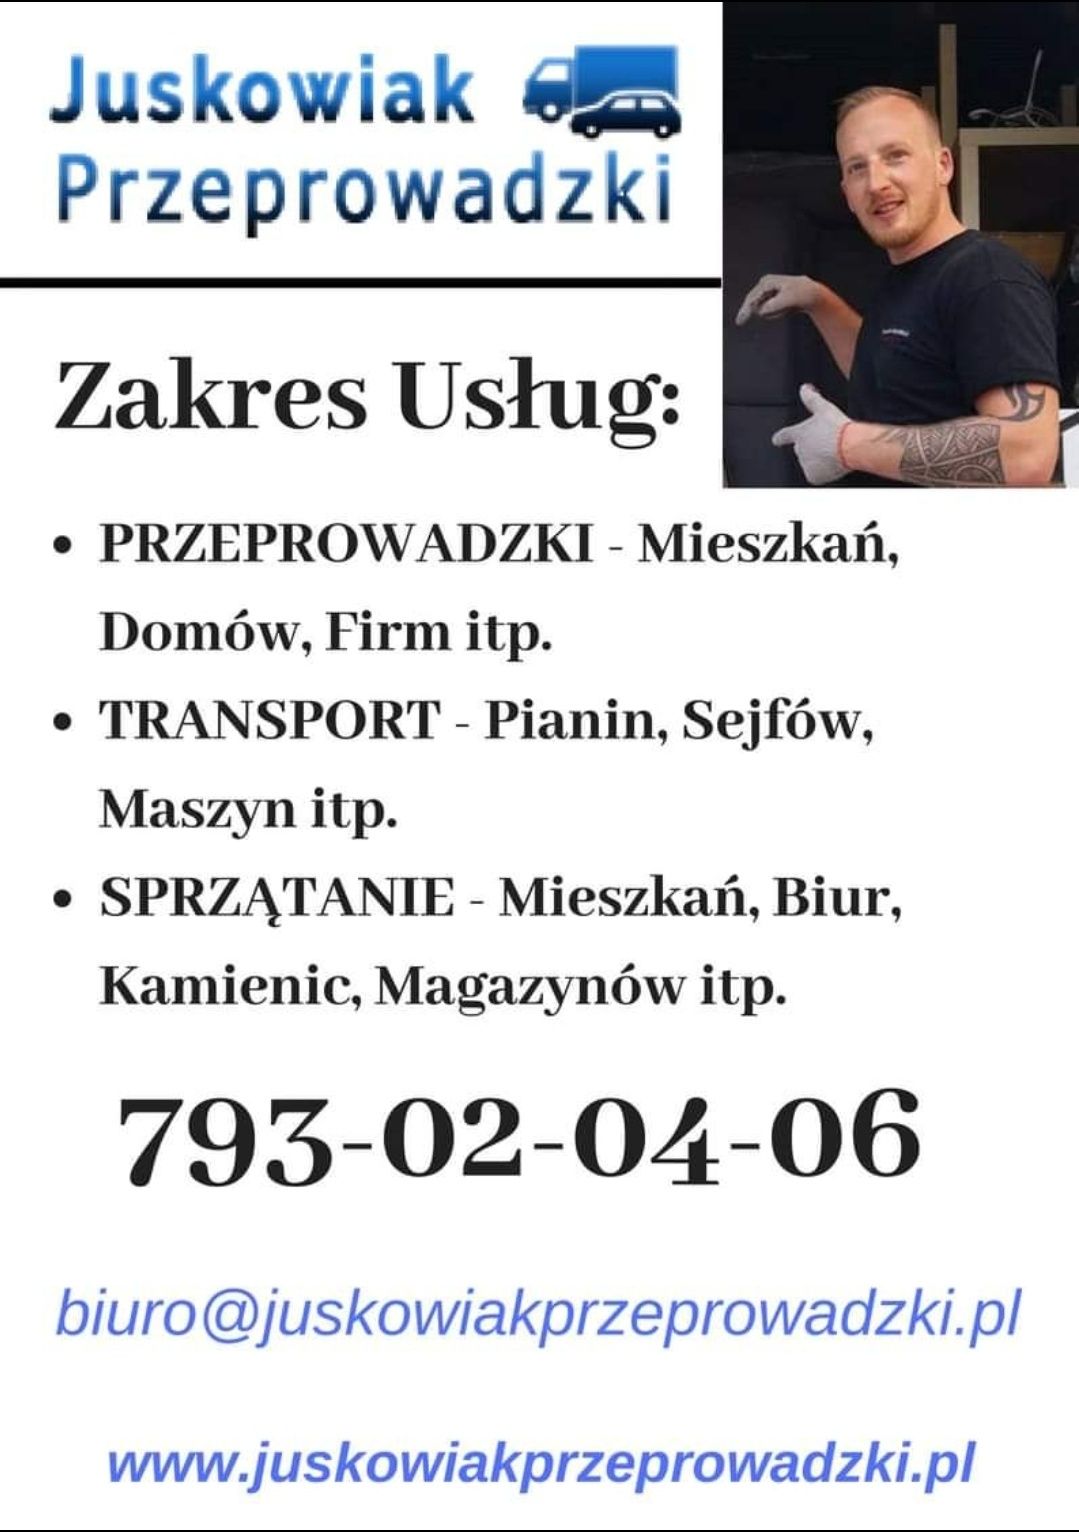 Przeprowadzki - Transport Poznań/Swarzędz/Luboń/Plewiska/Okolice